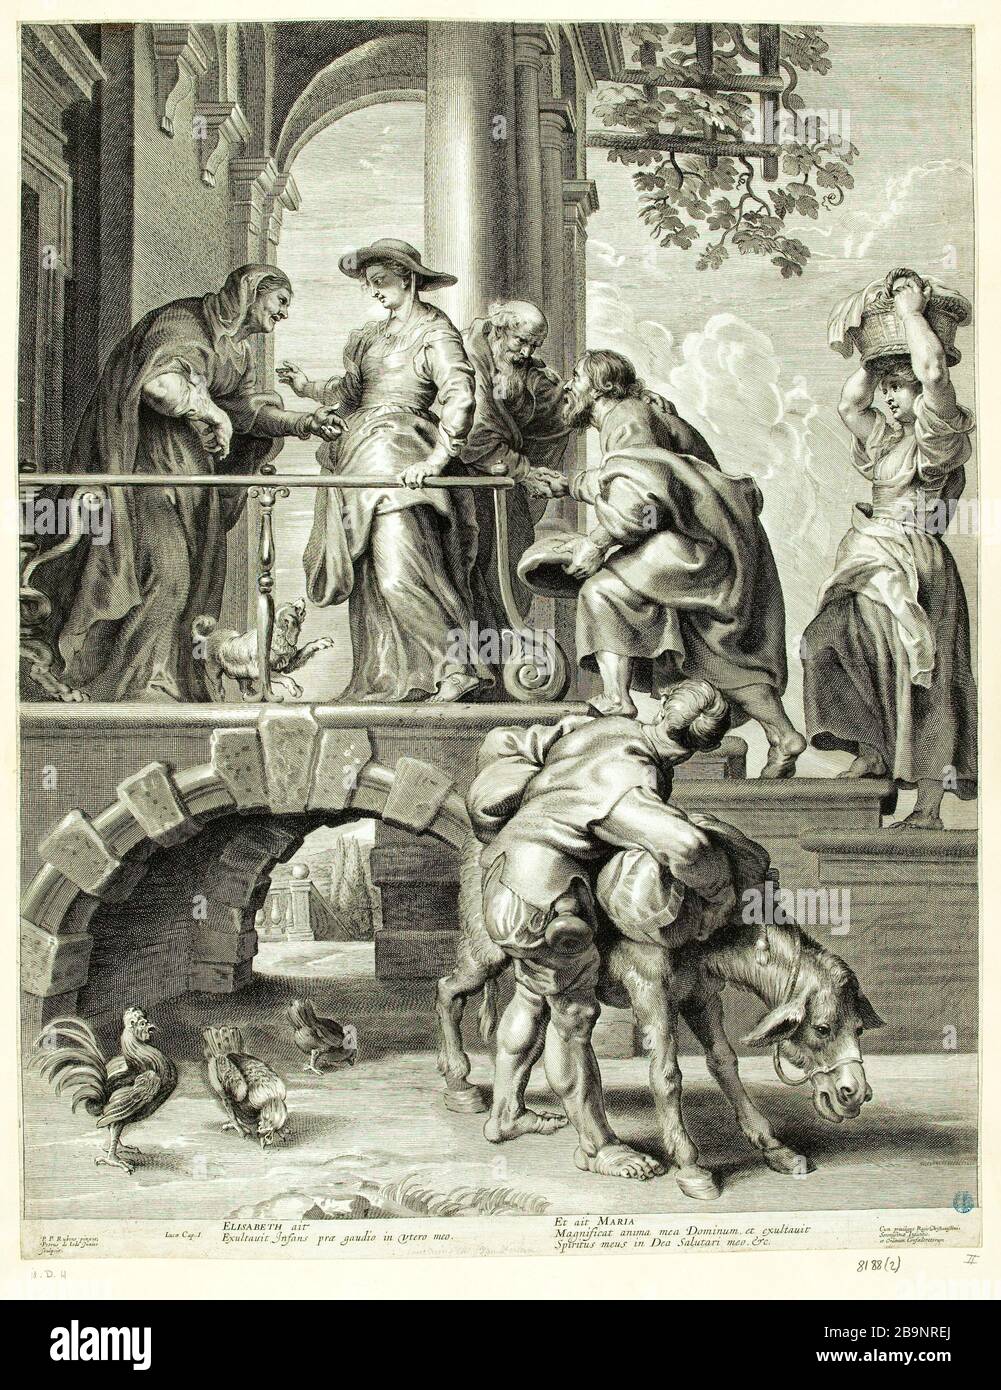 La Visitazione Pietro II de Jode (15701674) d'après Pierre Paul Rubens (1577-1640). La Visitation. Gravure au burin. Musée des Beaux-Arts de la Ville de Paris, Petit Palais. Foto Stock